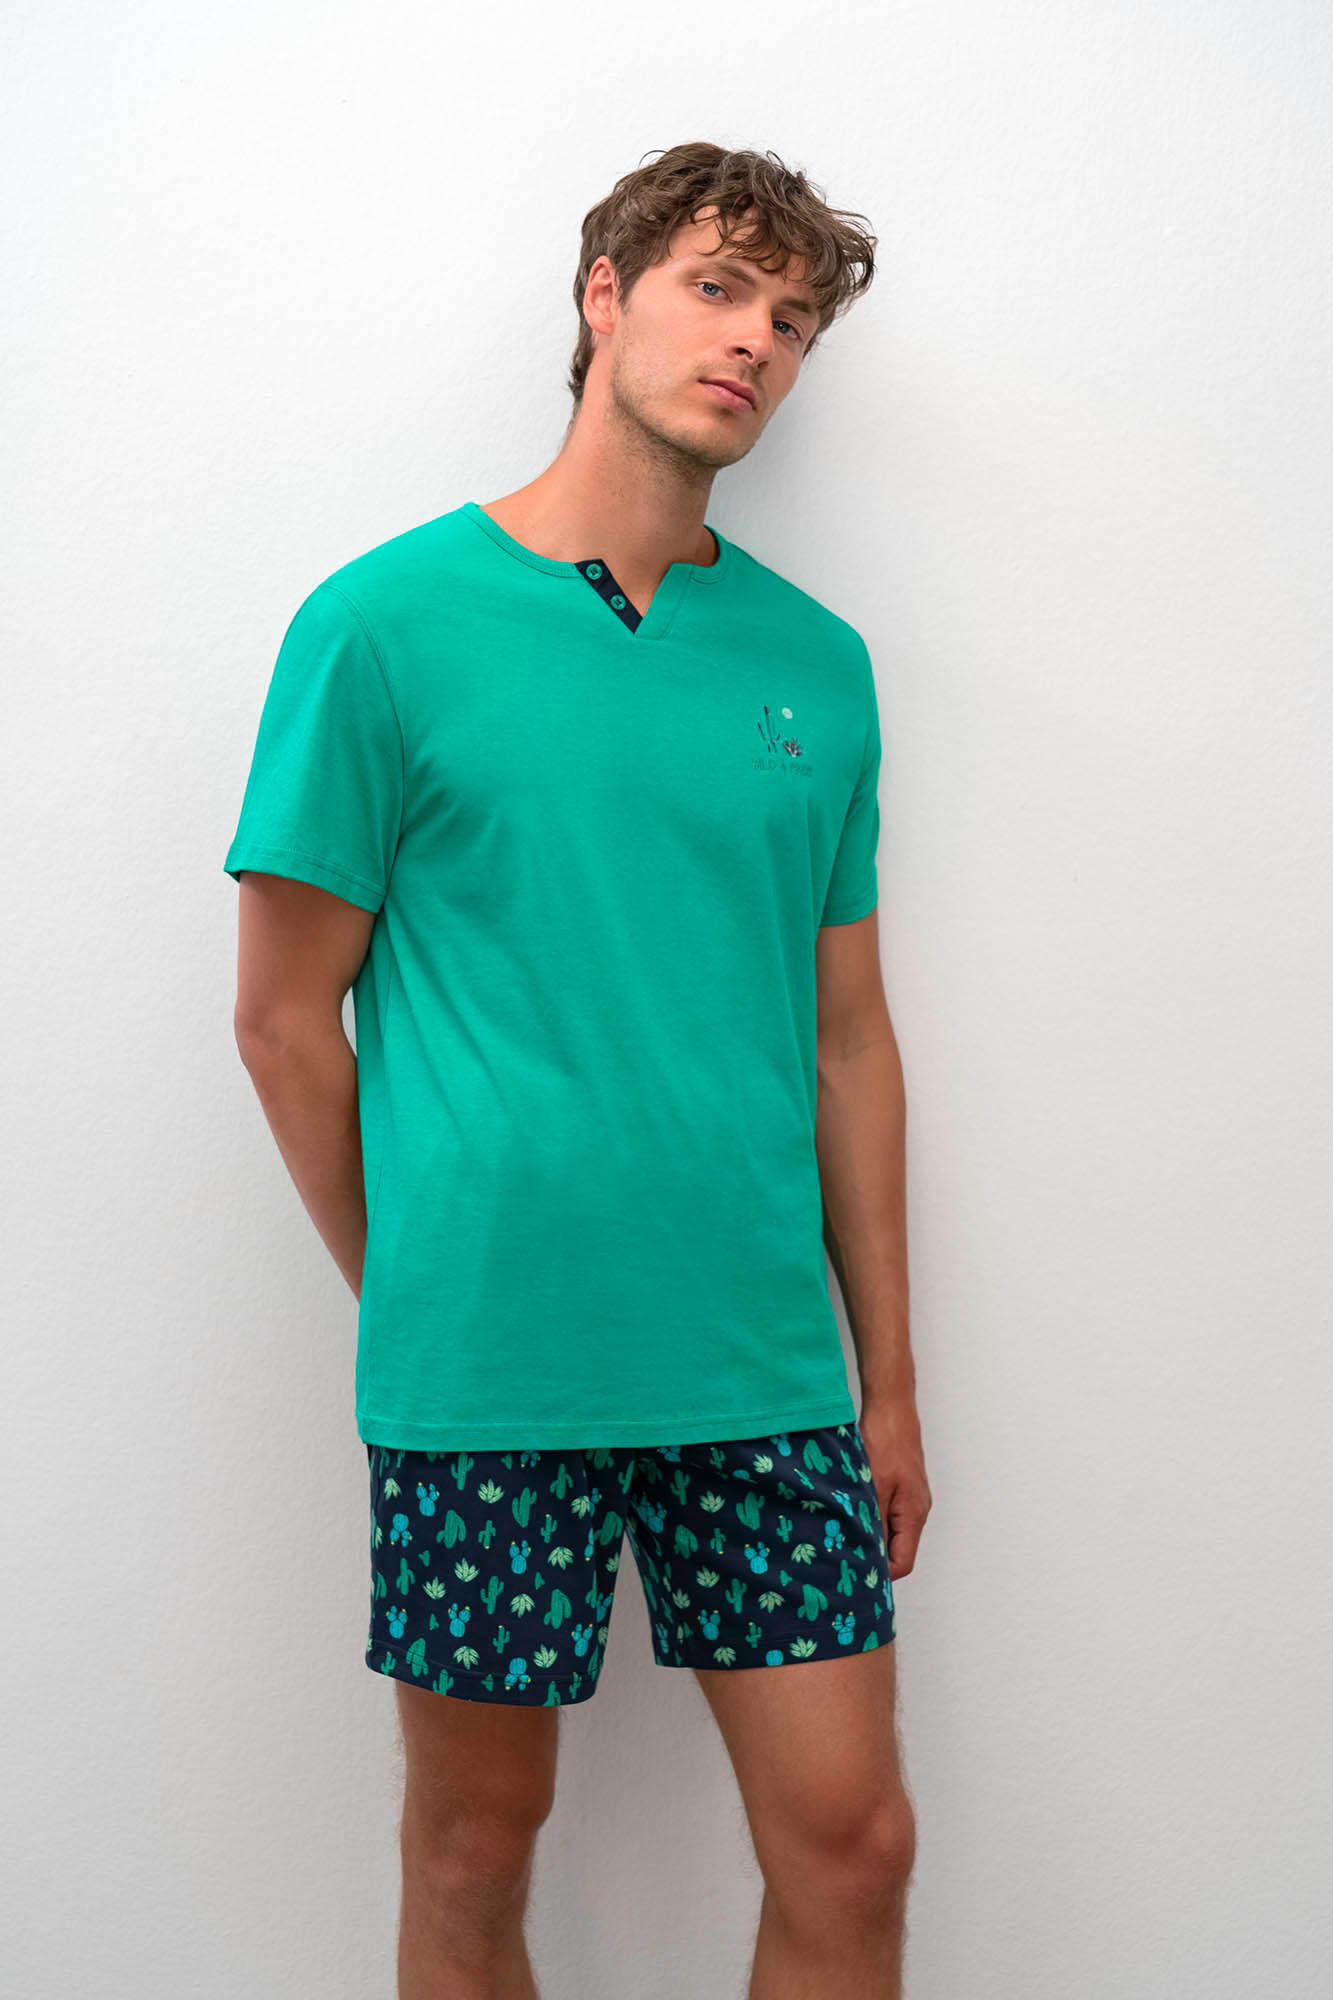 Pánské krátké pyžamo 16660 - Vamp M zelenomodrá